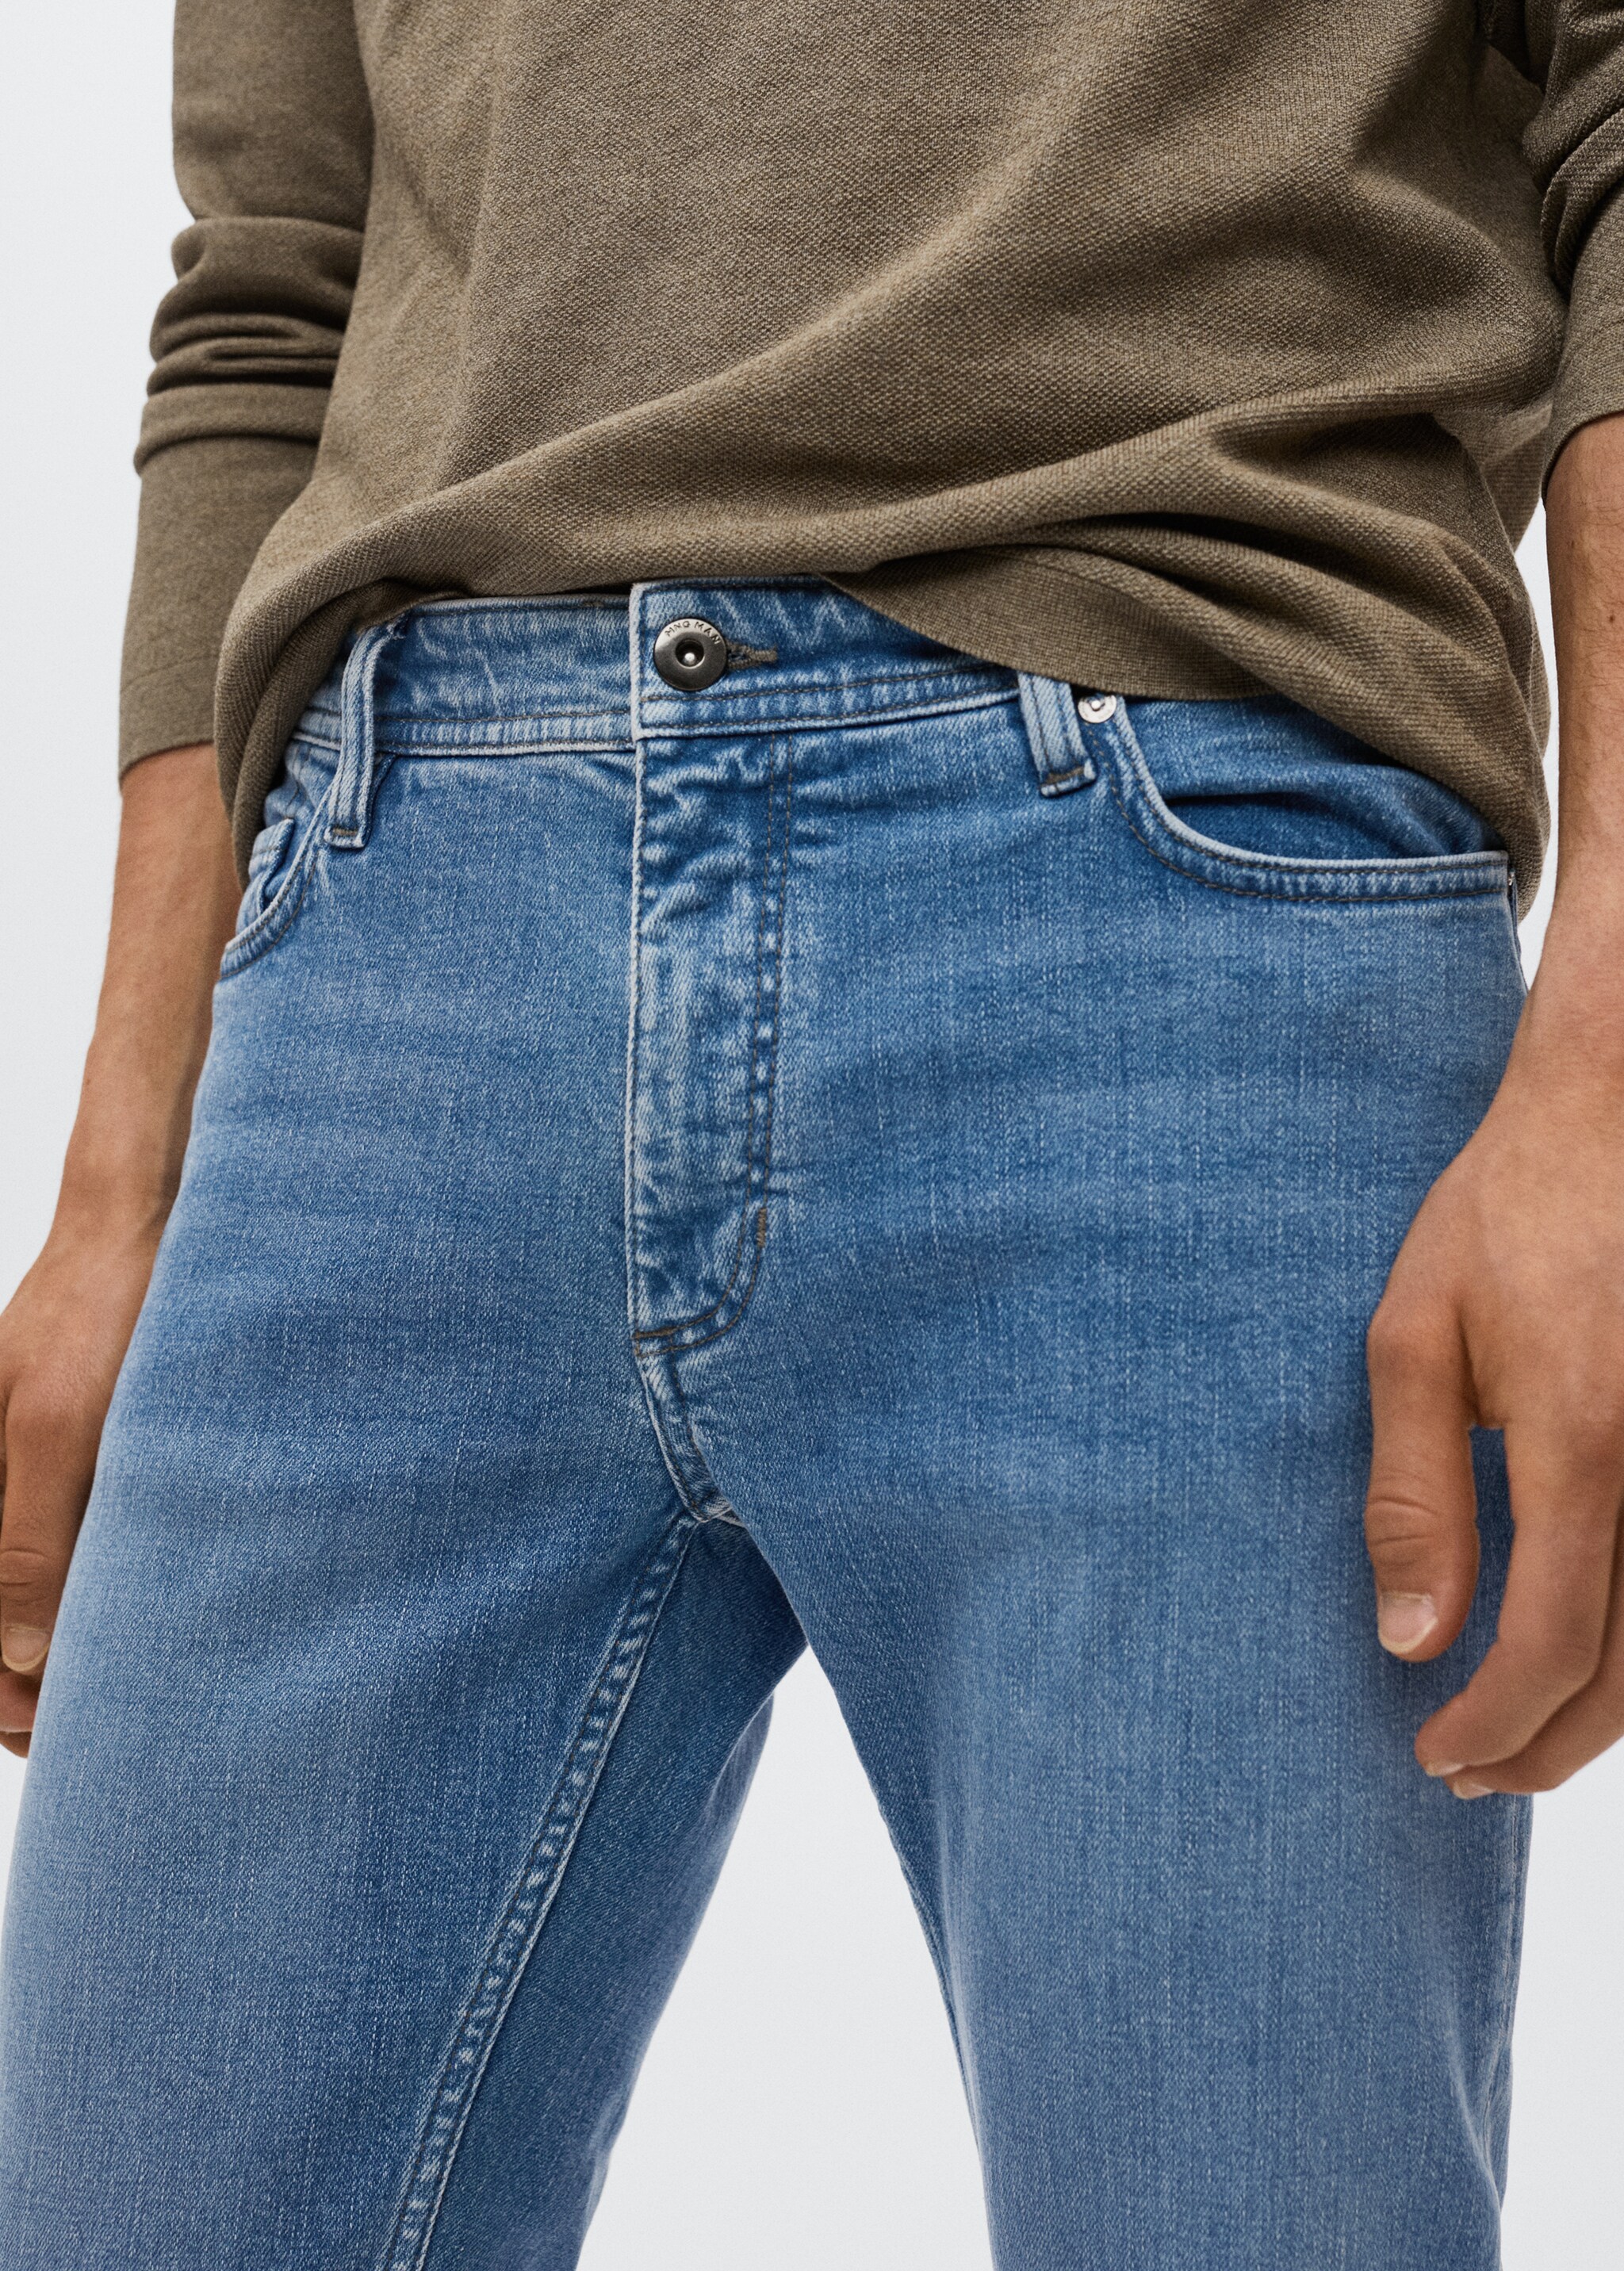 Jeans Jan slim fit  - Detalle del artículo 1